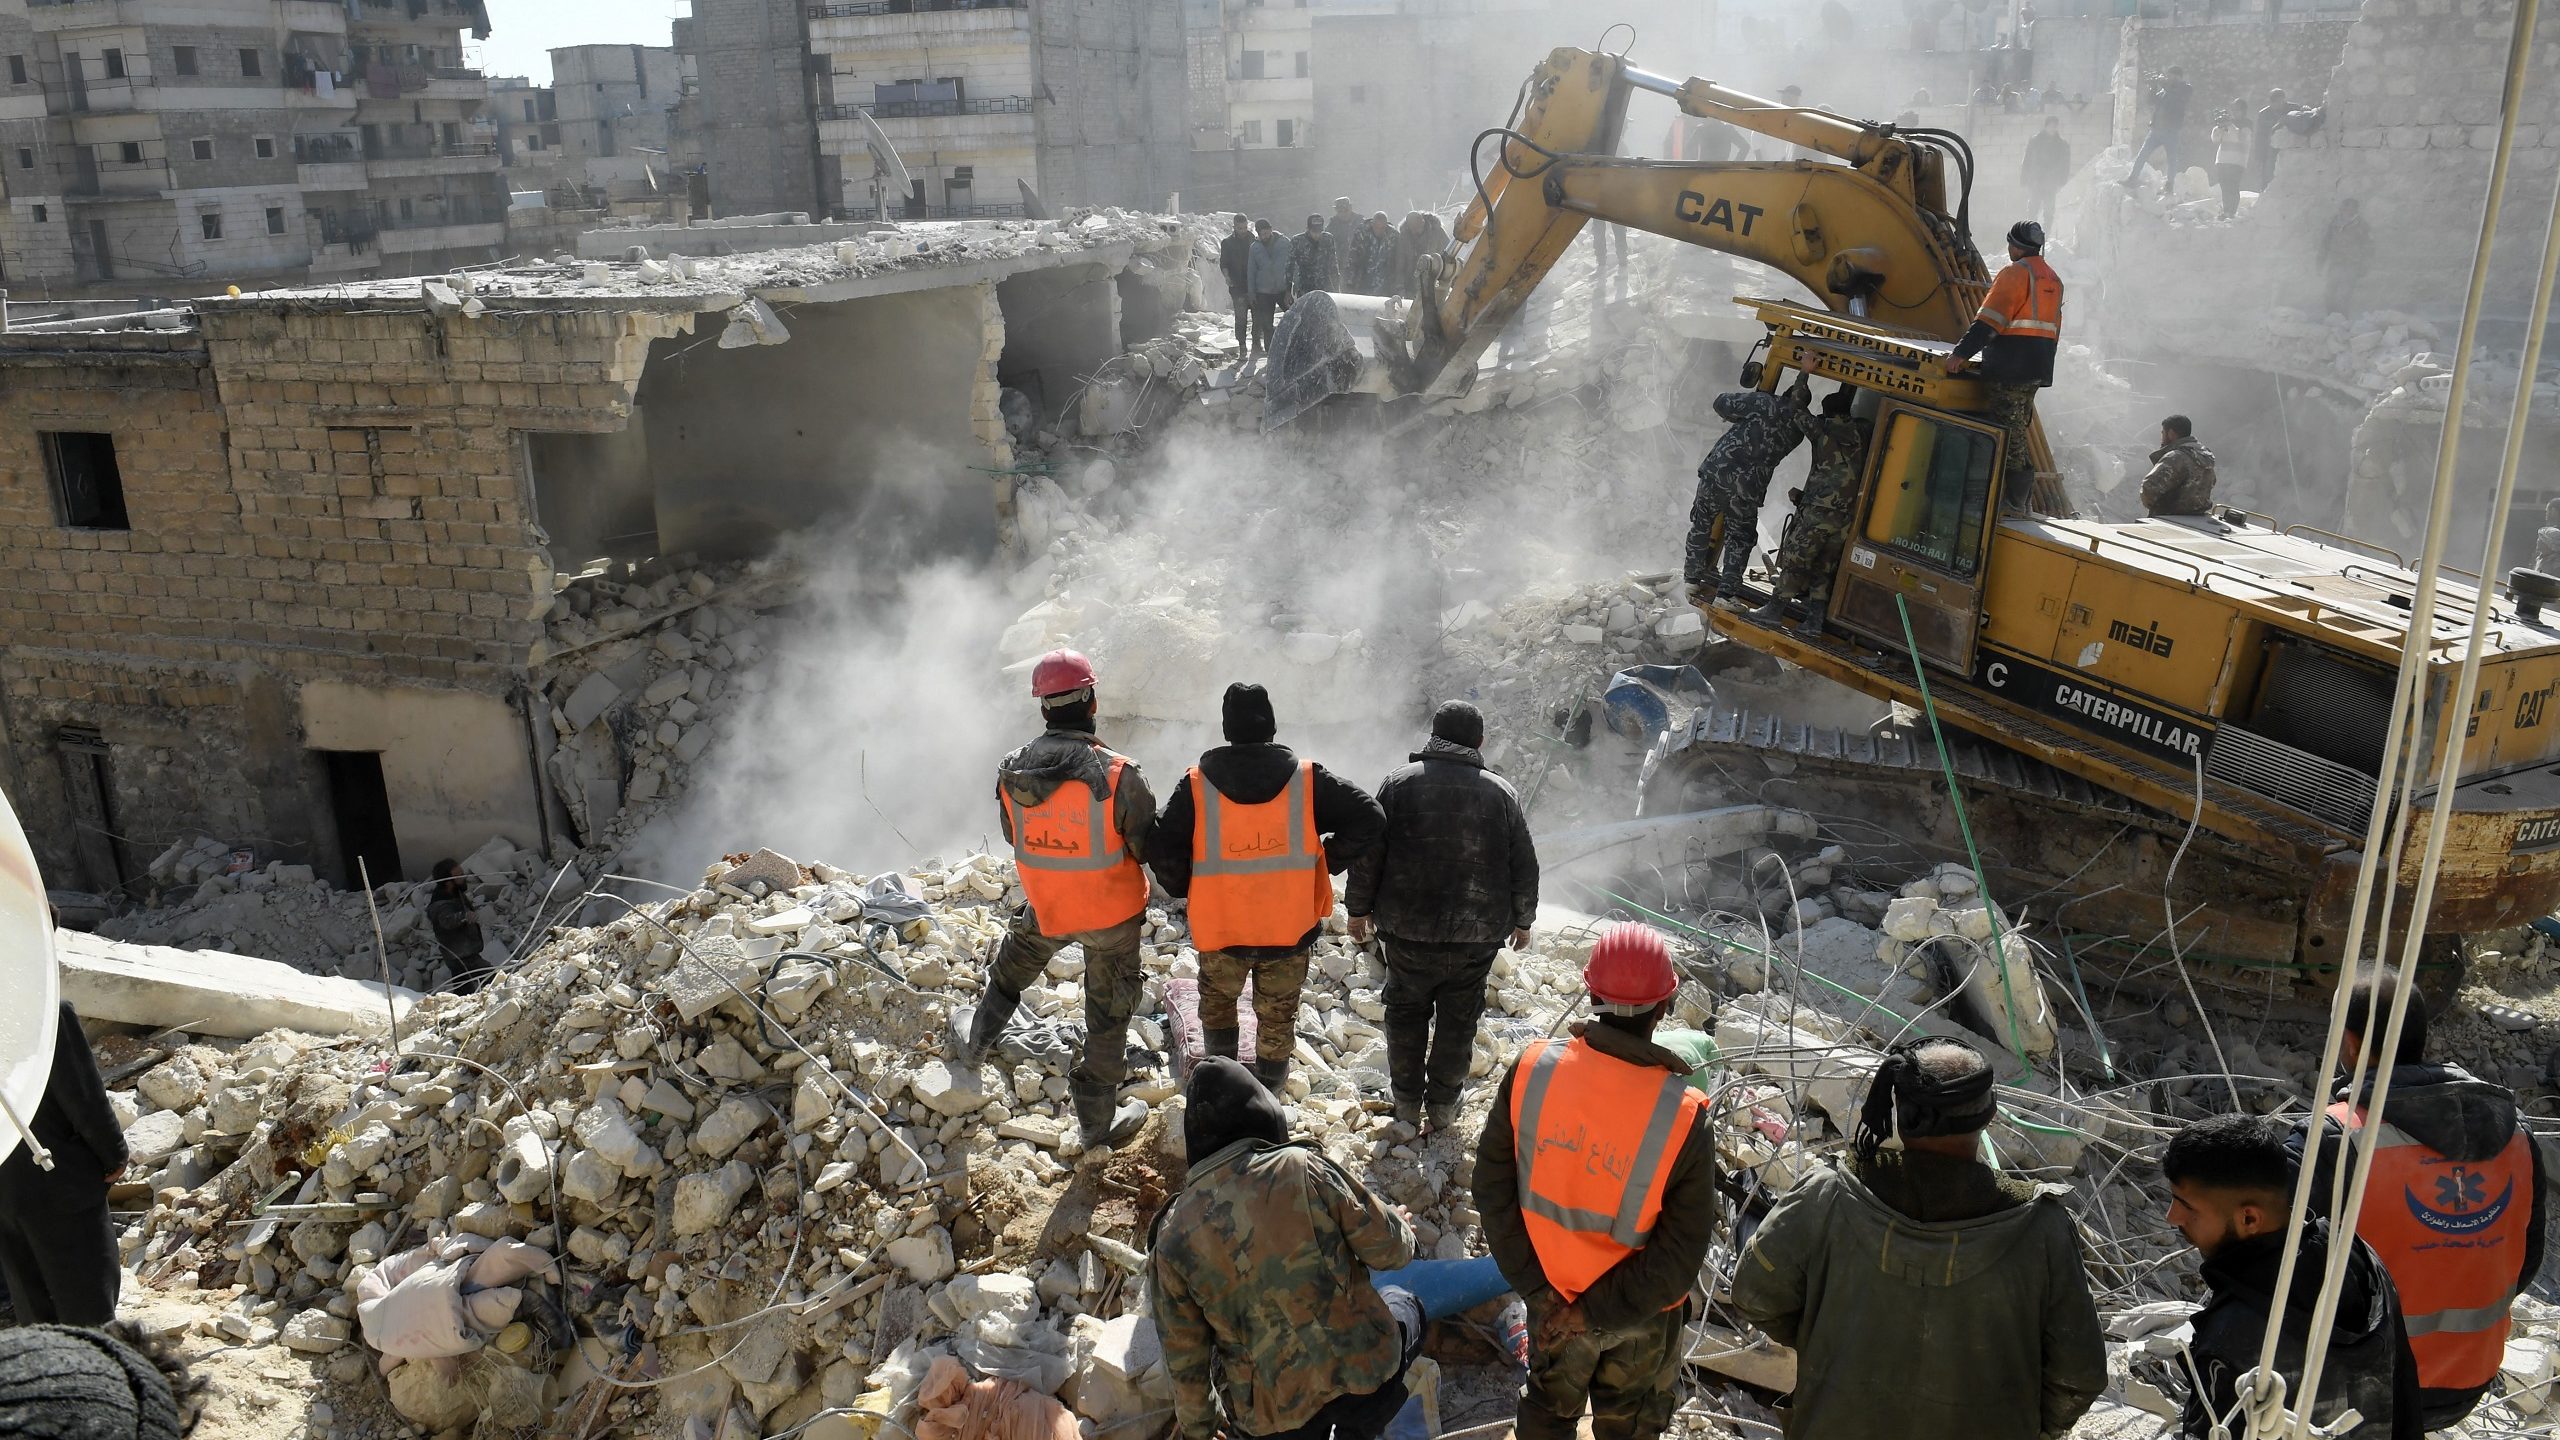 Building Collapse in Aleppo, Syria Kills 16